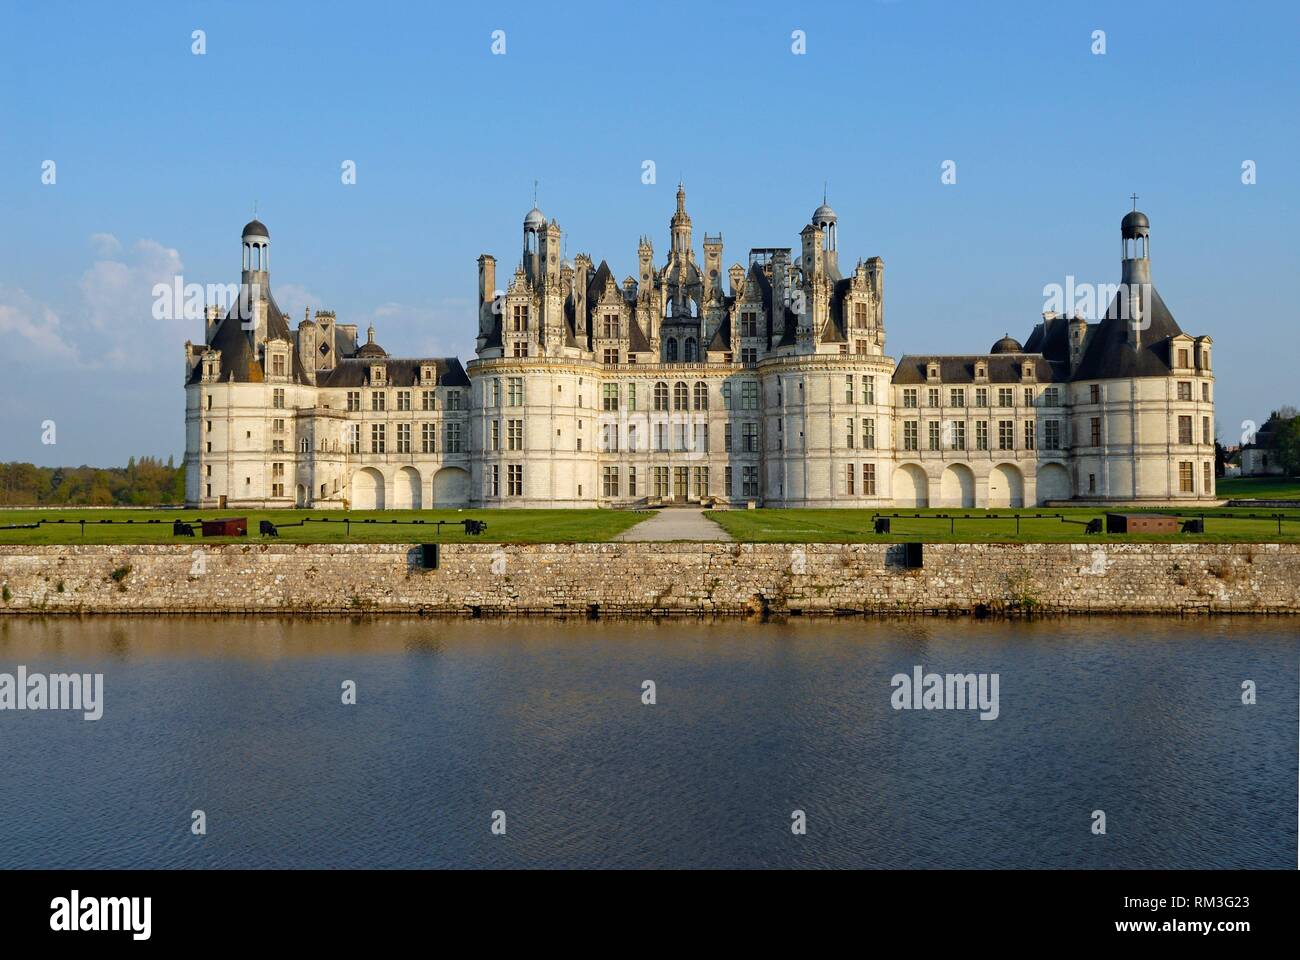 Chateau de Chambord, Loir-et-Cher department, Centre-Val de Loire region, France, Europe. Stock Photo